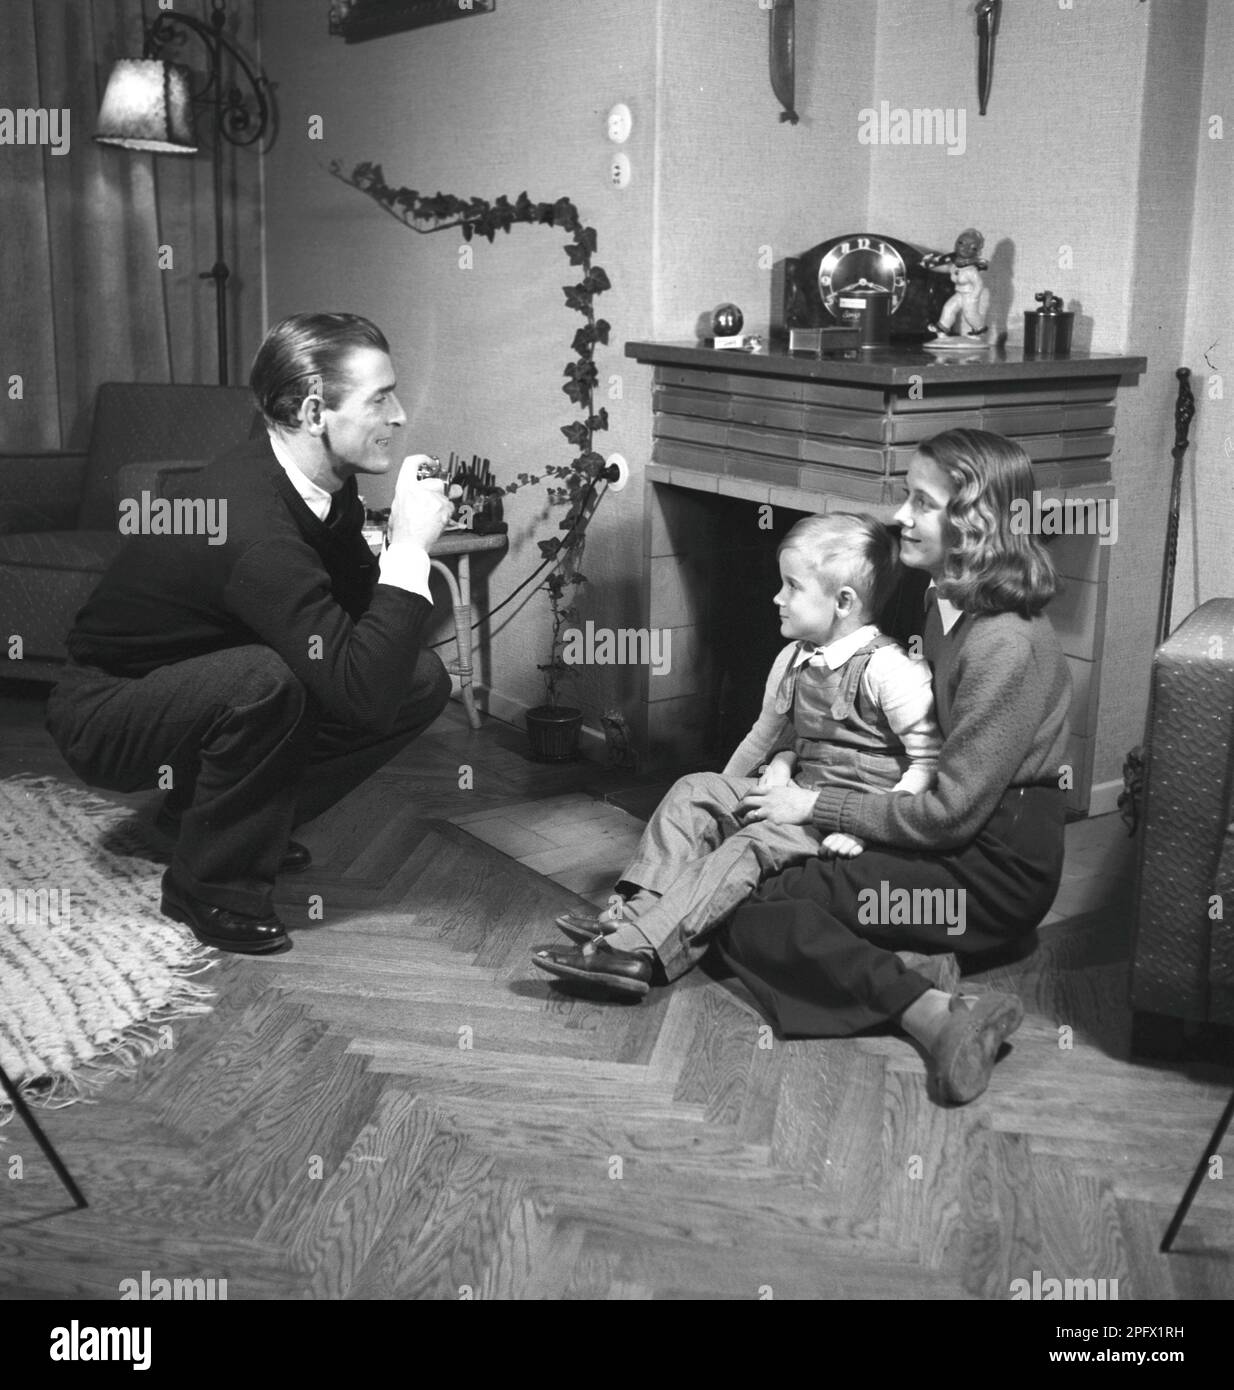 Ein Amateurfotograf in den 1940er Jahren fotografiert seine Frau und seinen Sohn zu Hause. Er ist der schwedische Schauspielersänger Lasse Dahlquist. Schweden 1943. Kristoffersson Ref. B27-4 Stockfoto